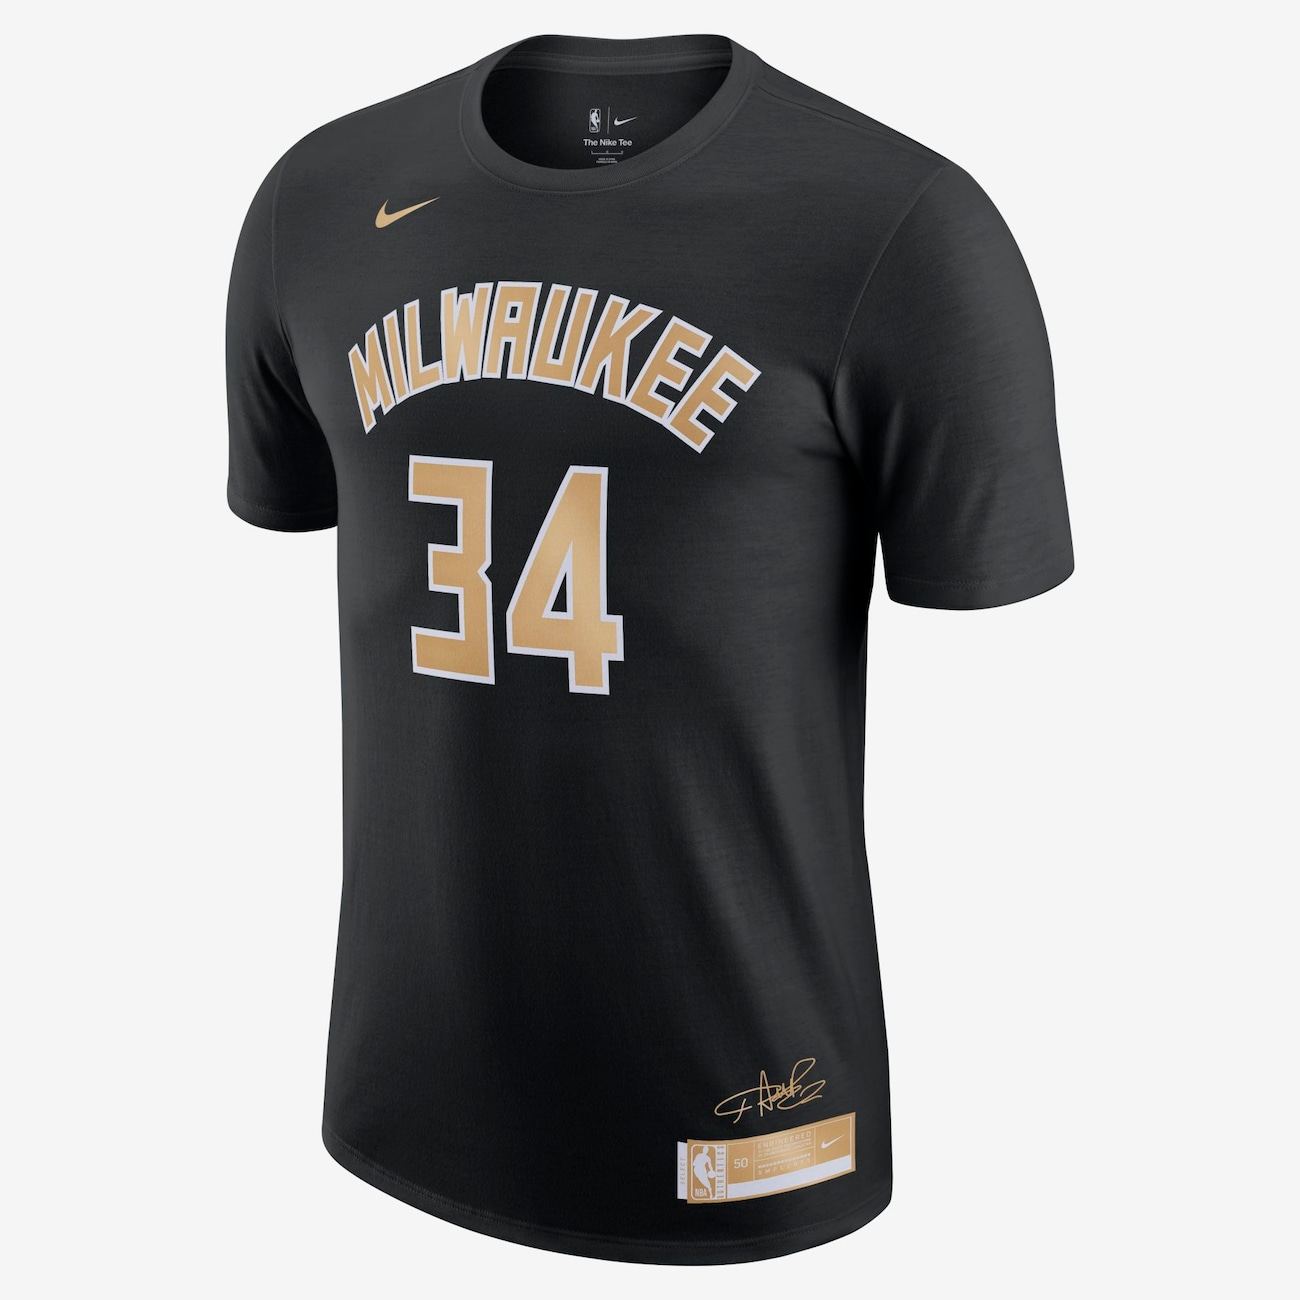 Camiseta Nike NBA Giannis Antetokounmpo Select Series Masculina